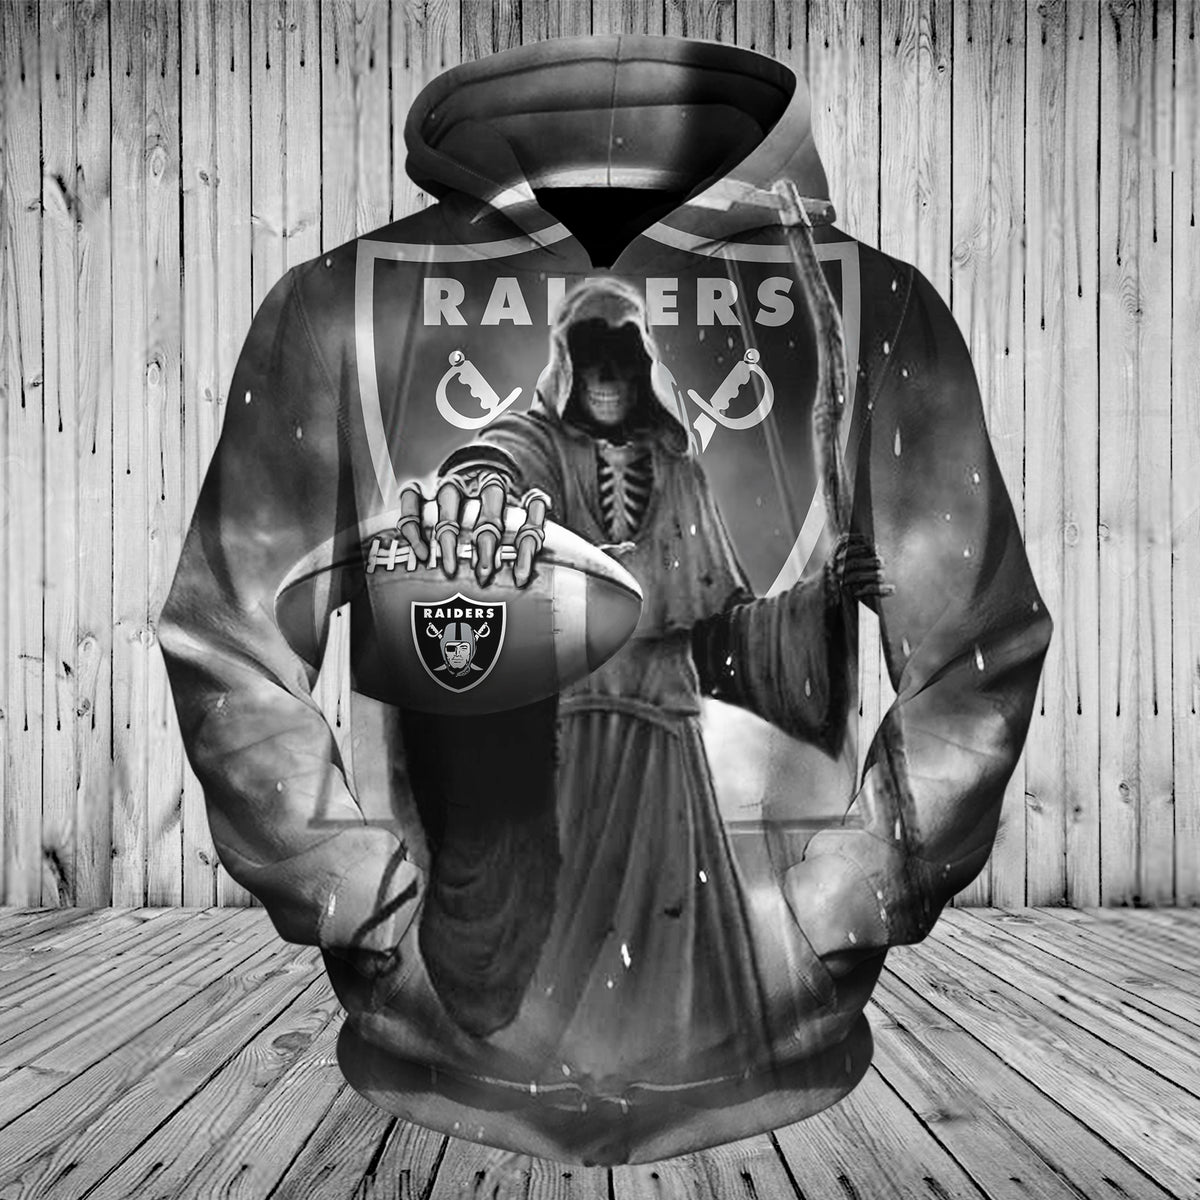 lv raiders hoodie